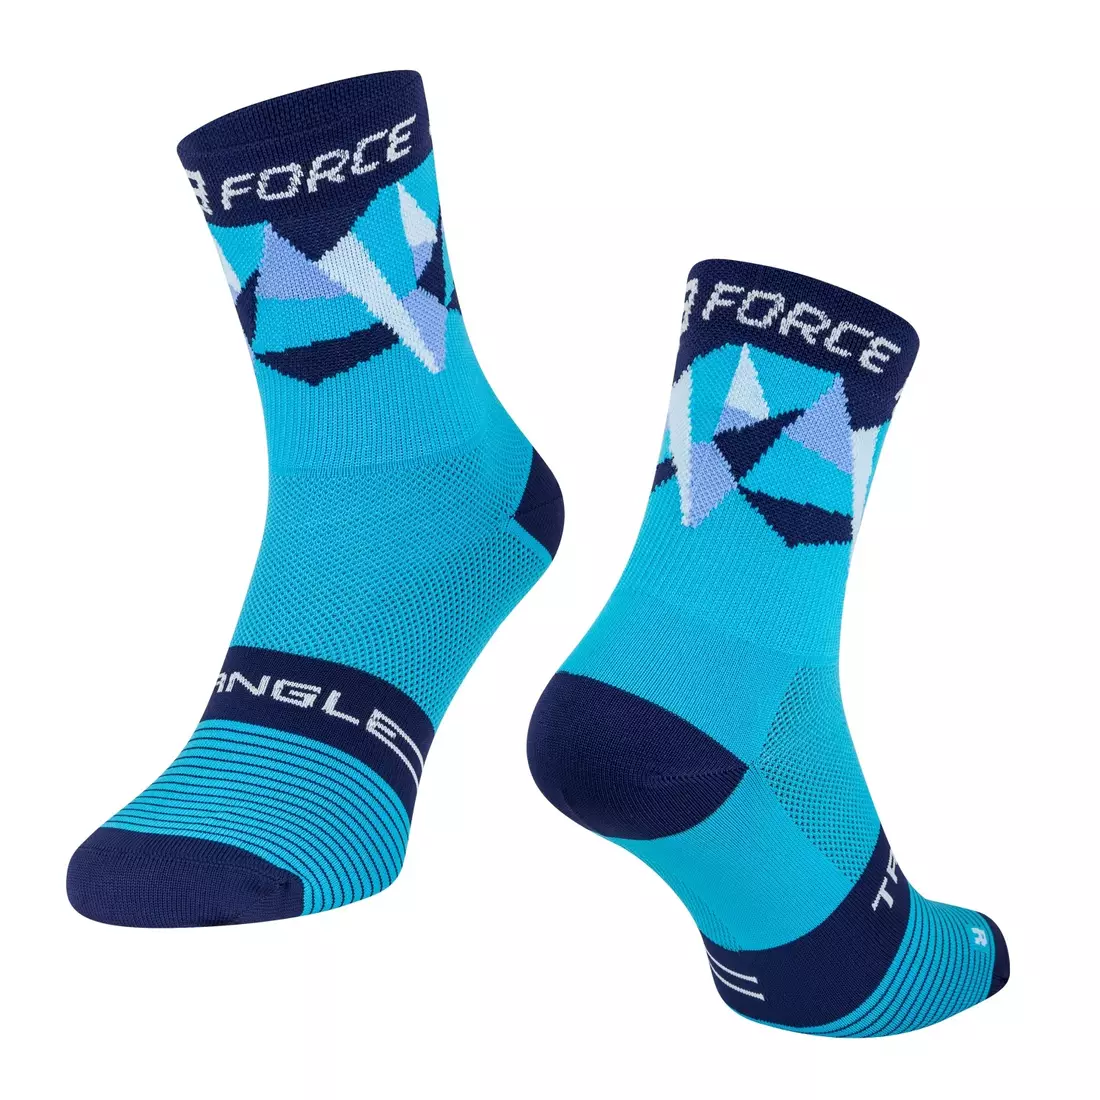 FORCE TRIANGLE kerékpáros/sport zokni, kék